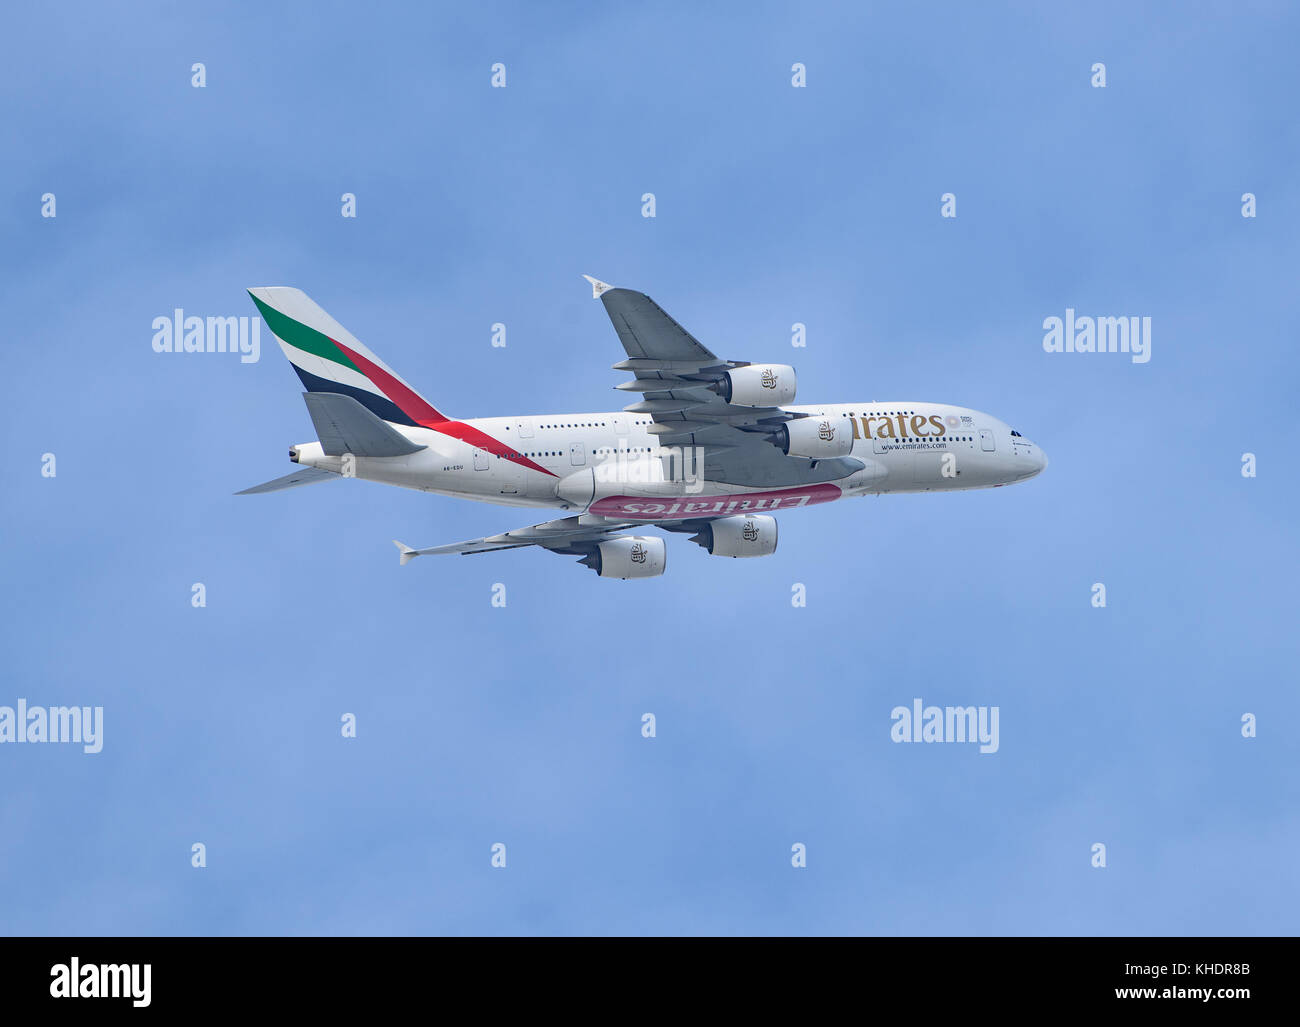 Un avion Airbus Emirates A380 décollage de l'aéroport de Manchester et survolant Dunham Massey, Trafford, Greater Manchester. Banque D'Images